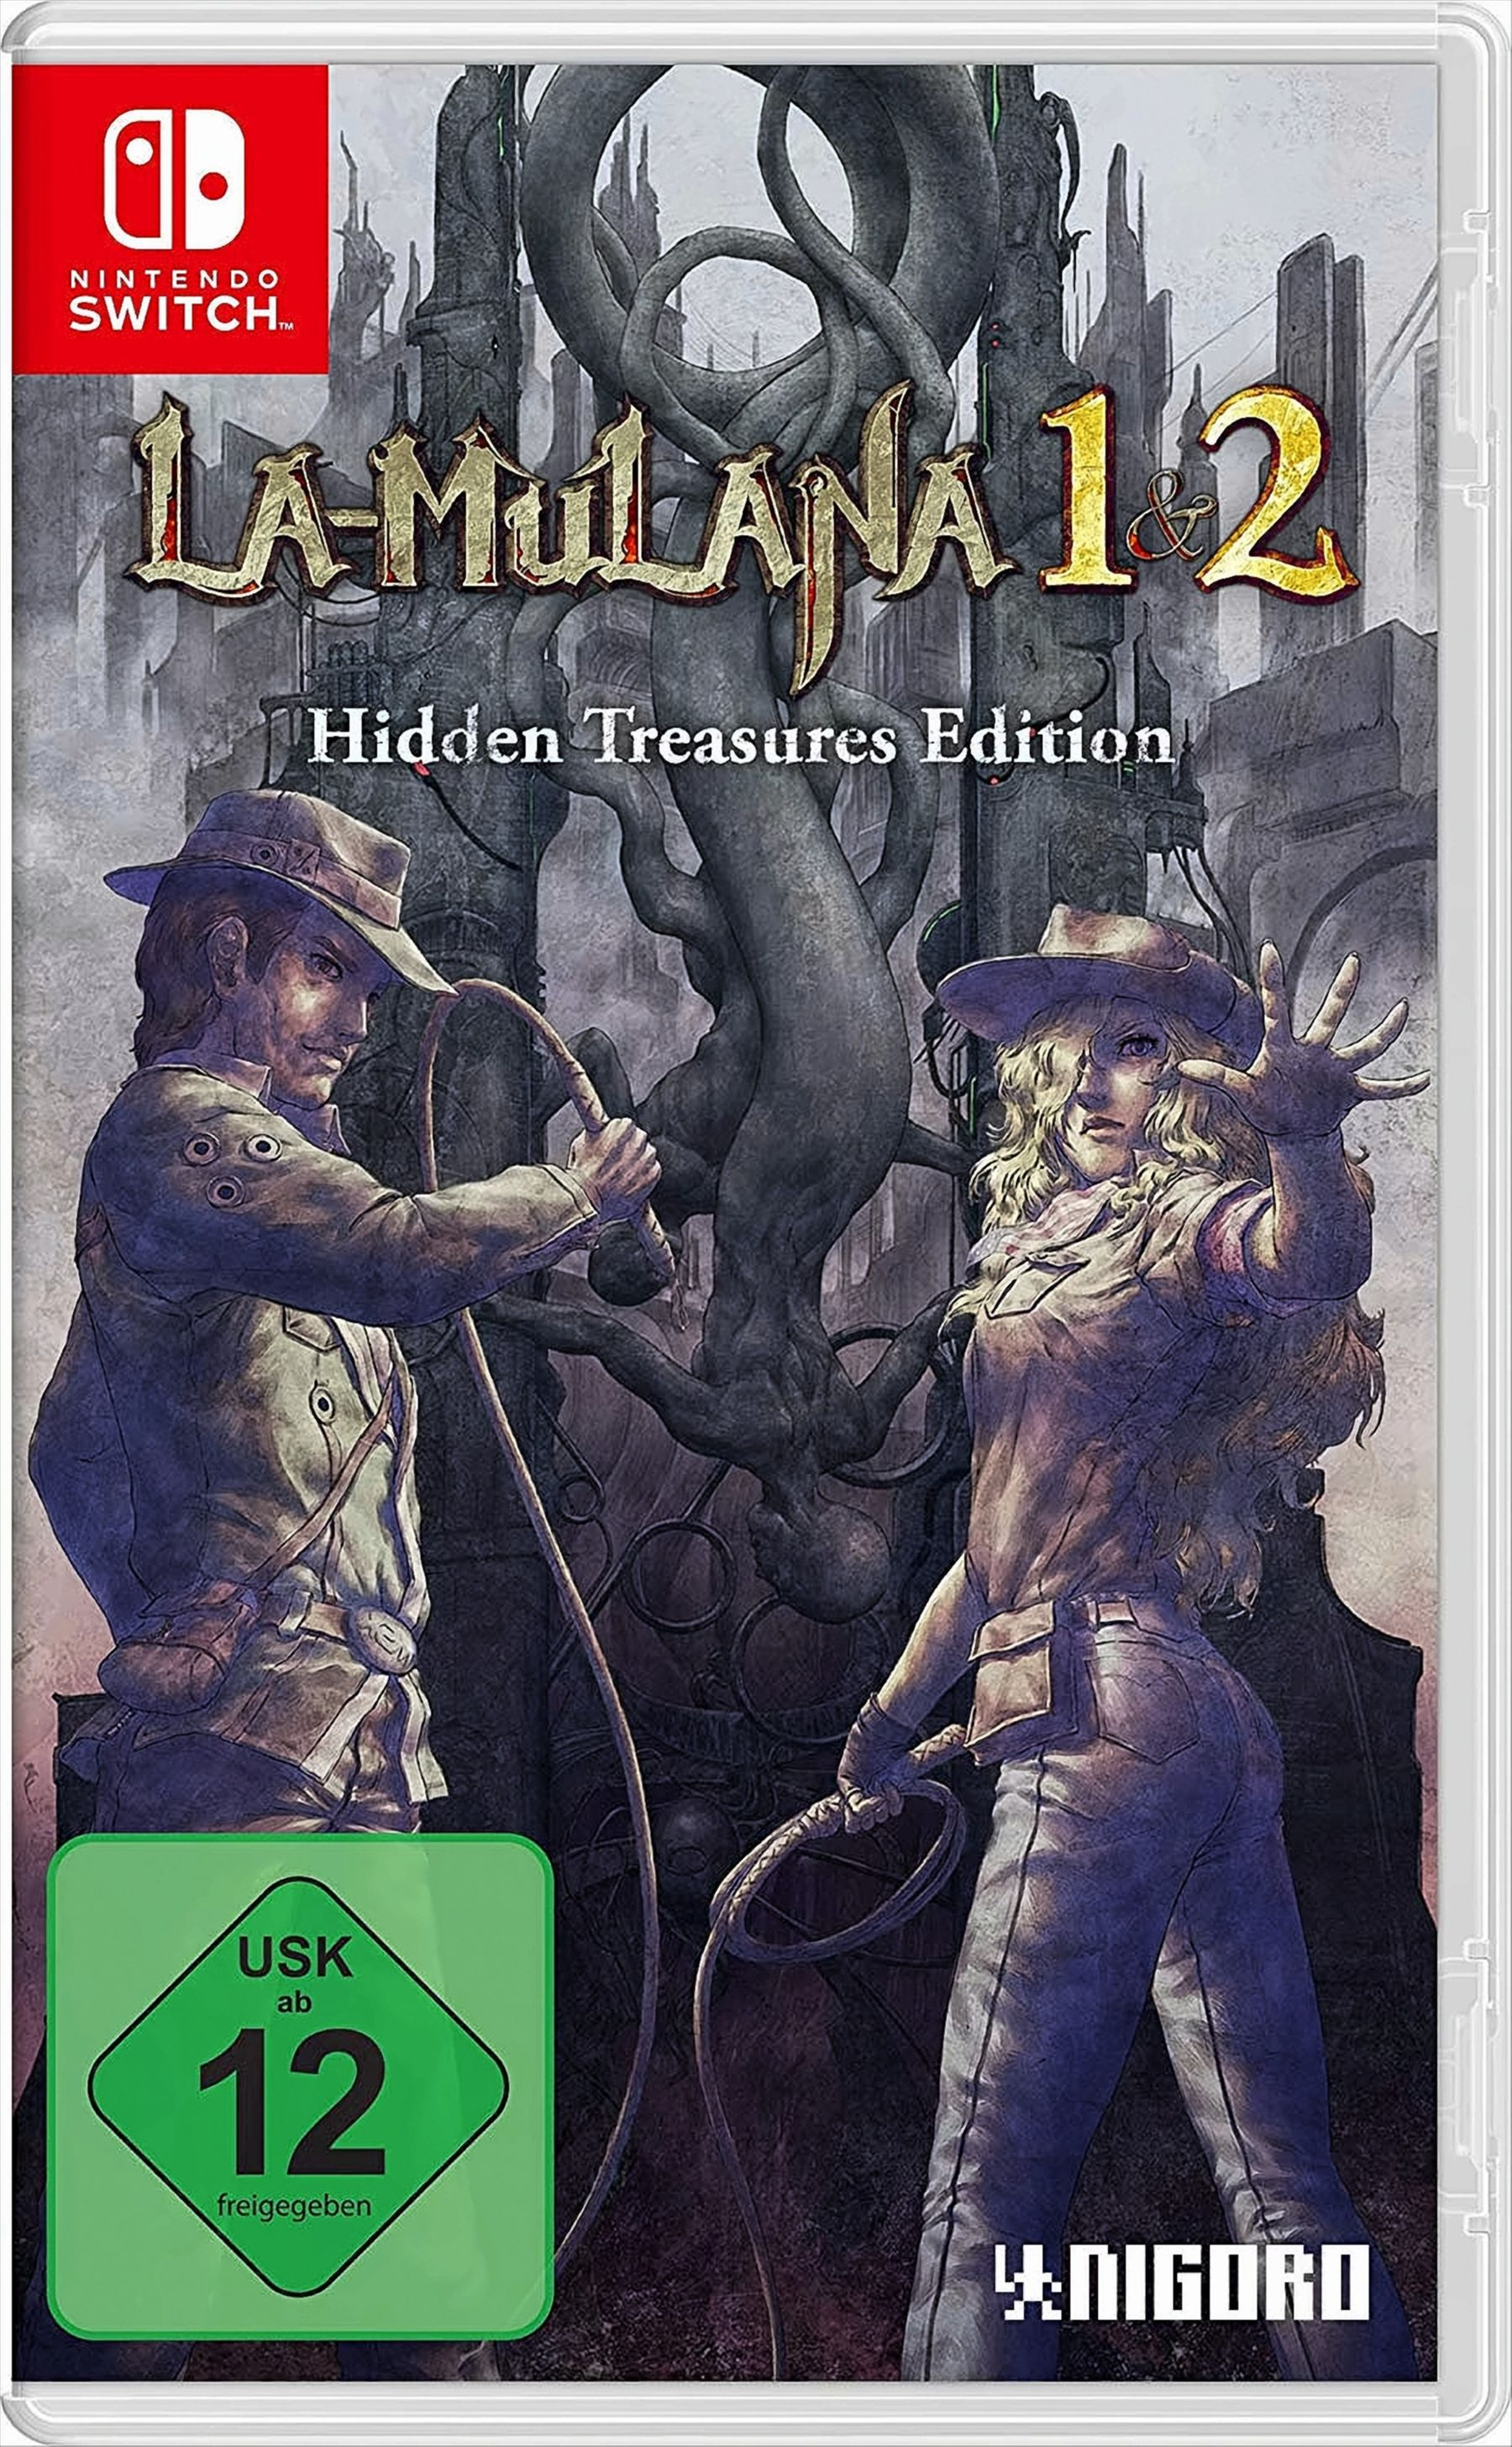 LA-MULANA 1 & 2: Hidden Edition - Switch] Treasures [Nintendo